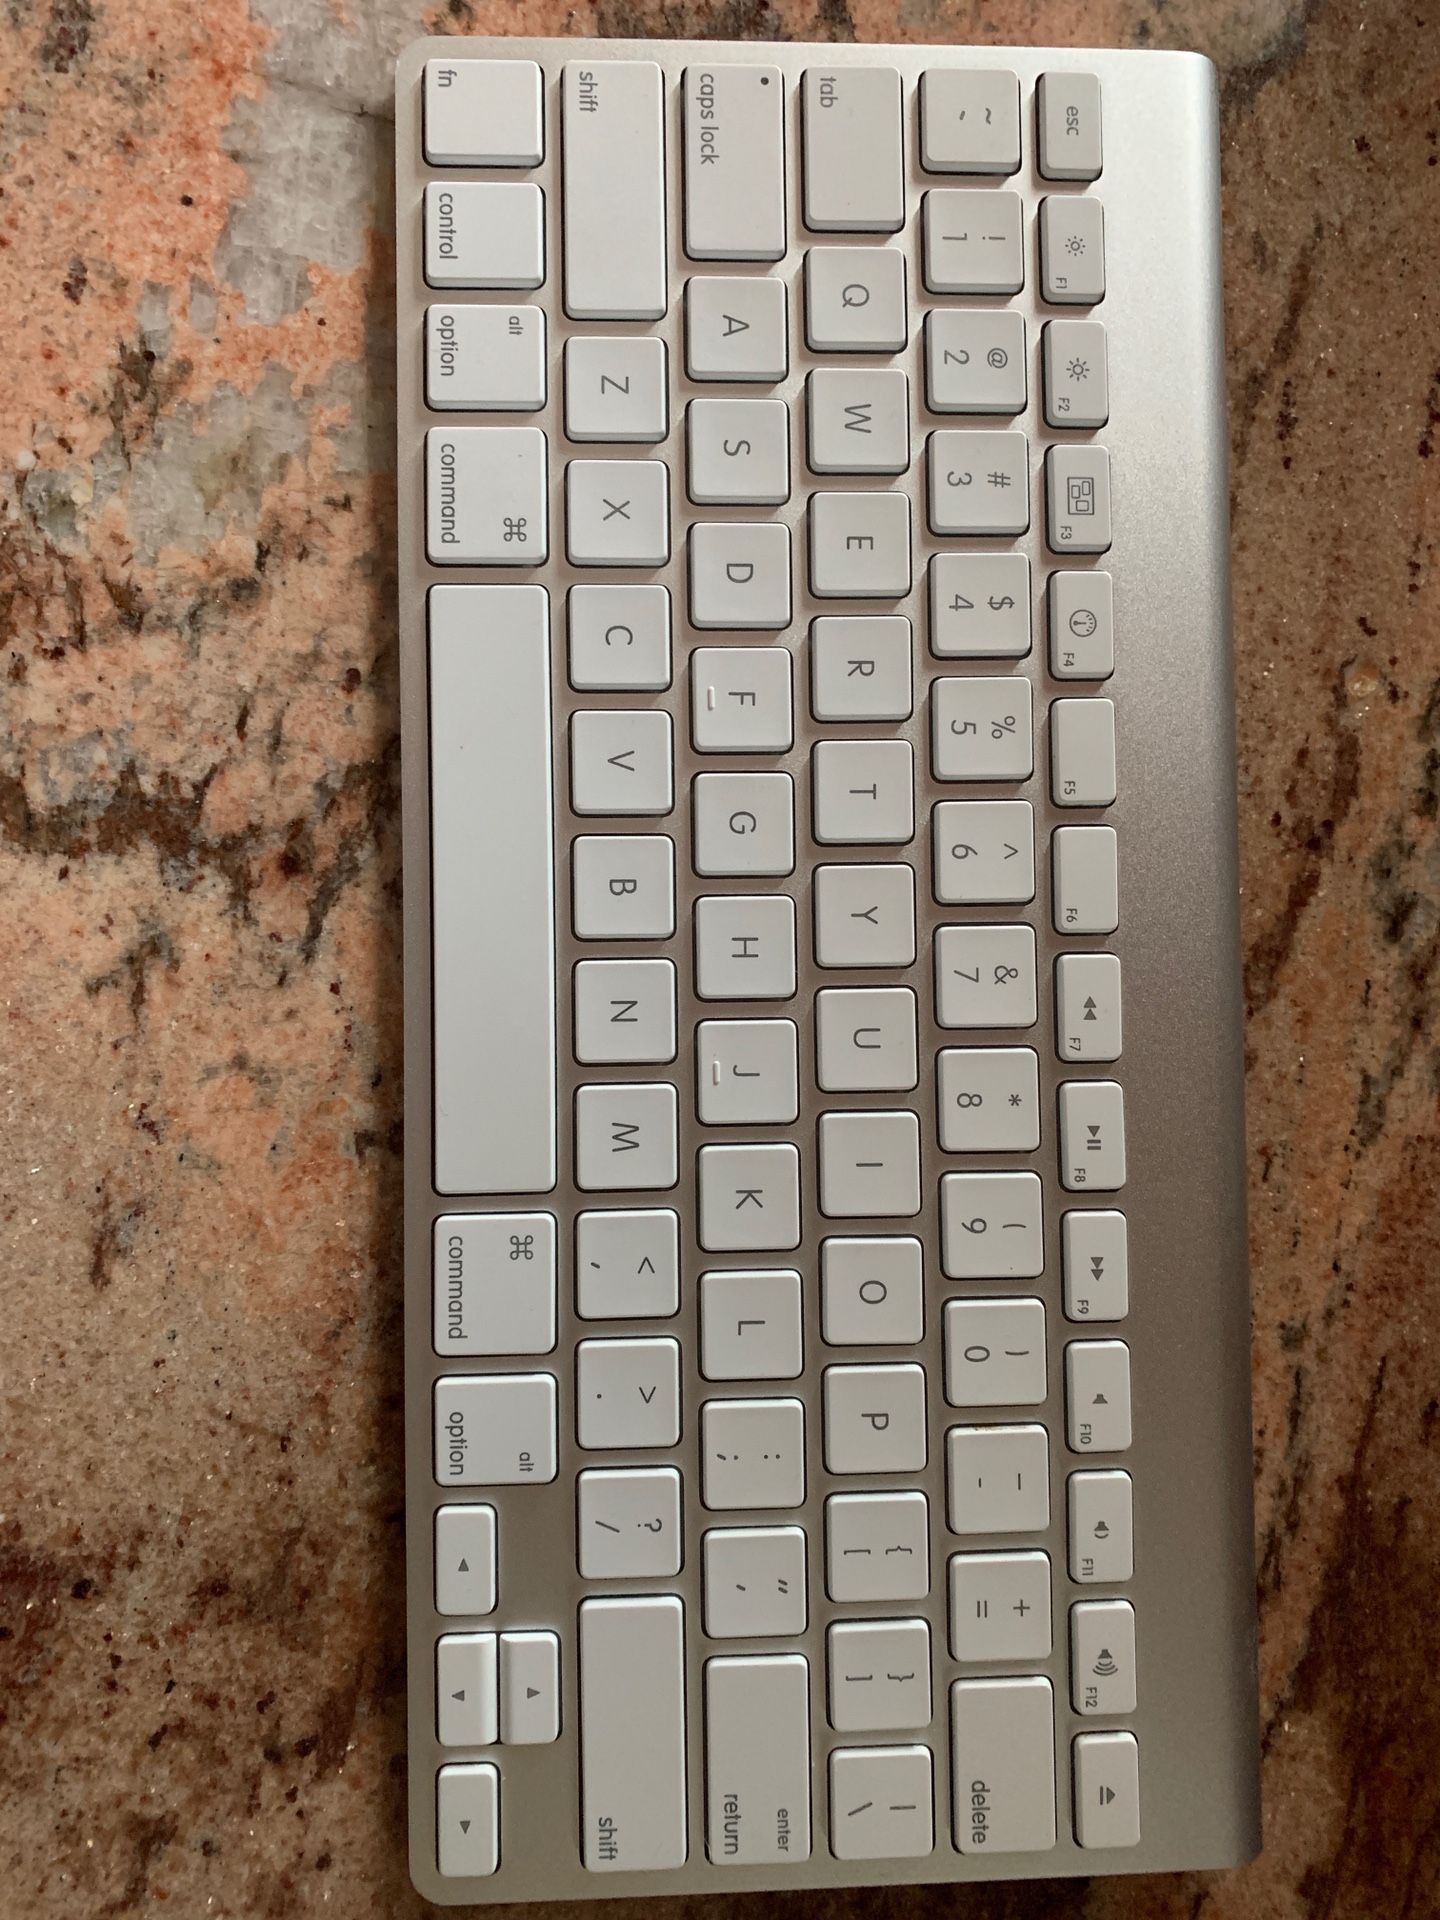 Wireless Mac keyboard